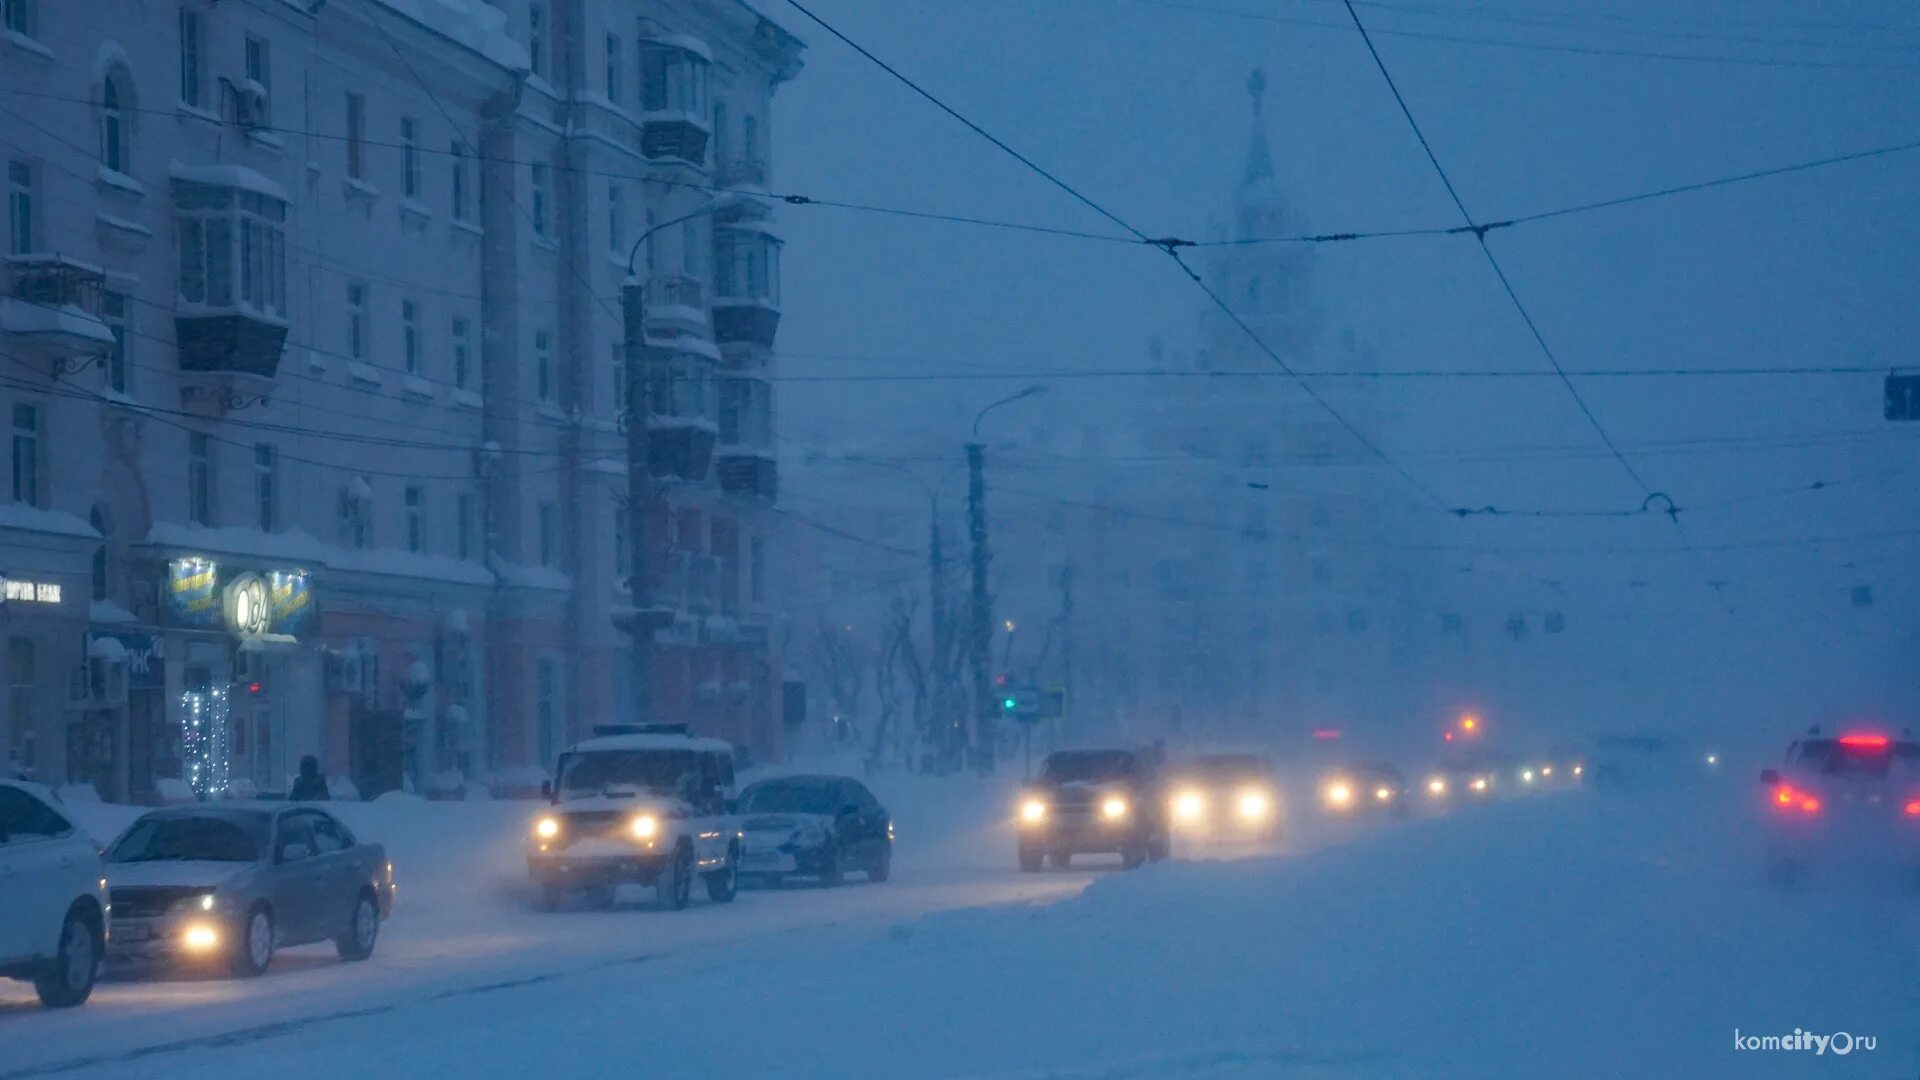 23 декабря 2014 г. Комсомольск на Амуре снегопад 2014. Комсомольск на Амуре снегопад. Комсомольск-на-Амуре снегопад 2013. Комсомольск на Амуре зима 2013.